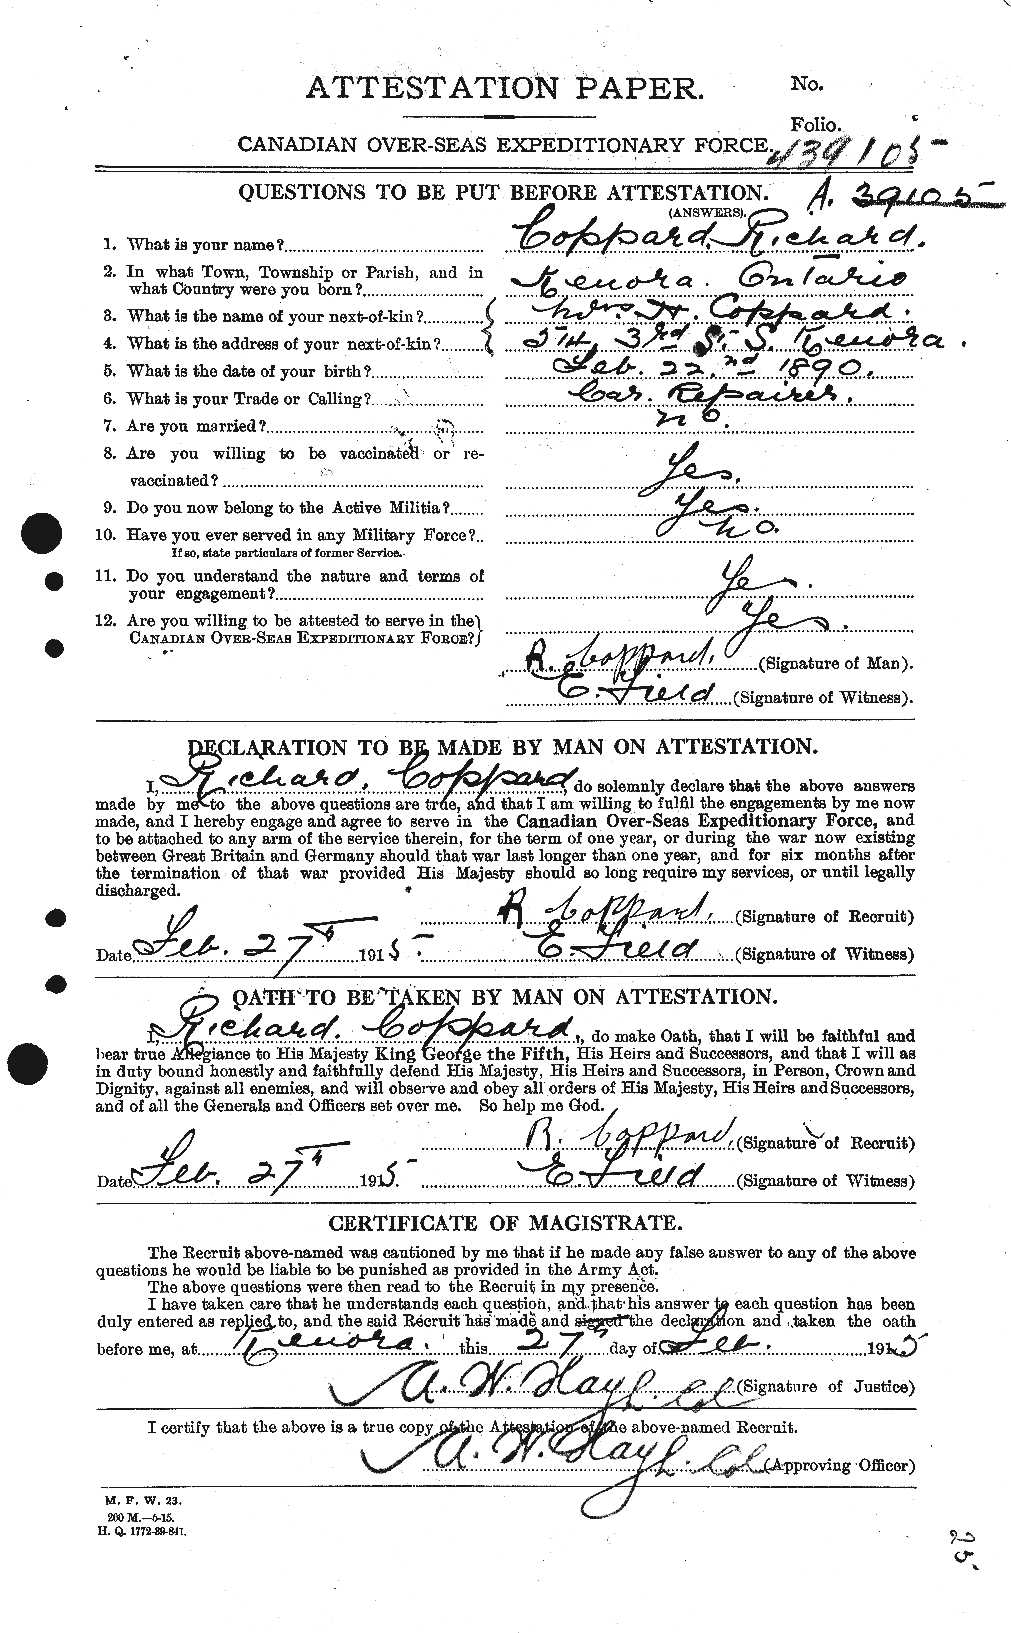 Dossiers du Personnel de la Première Guerre mondiale - CEC 056221a